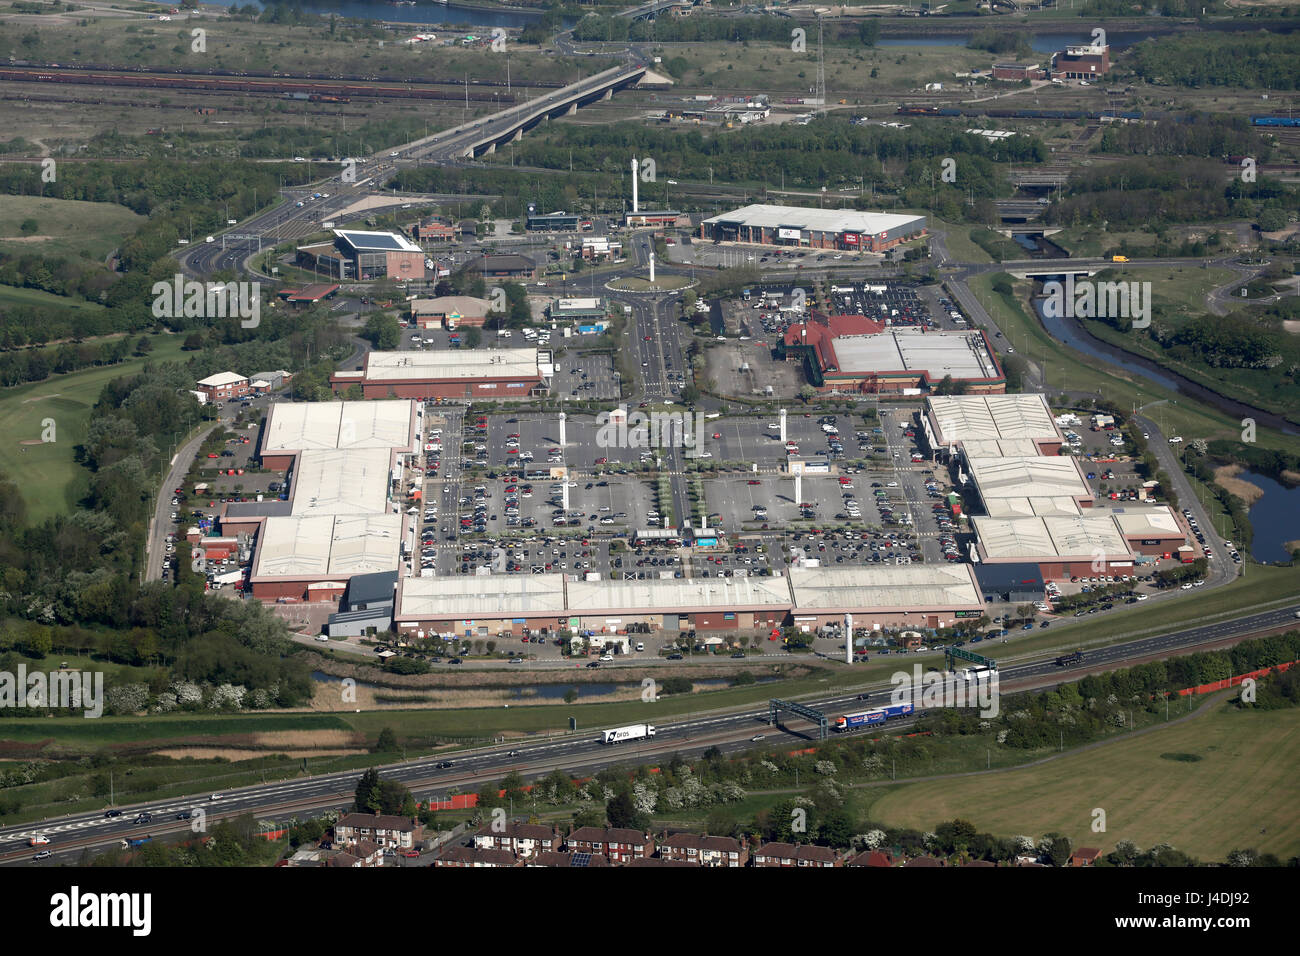 Vue aérienne de Teesside Shopping Park, Stockton on Tees, UK Banque D'Images